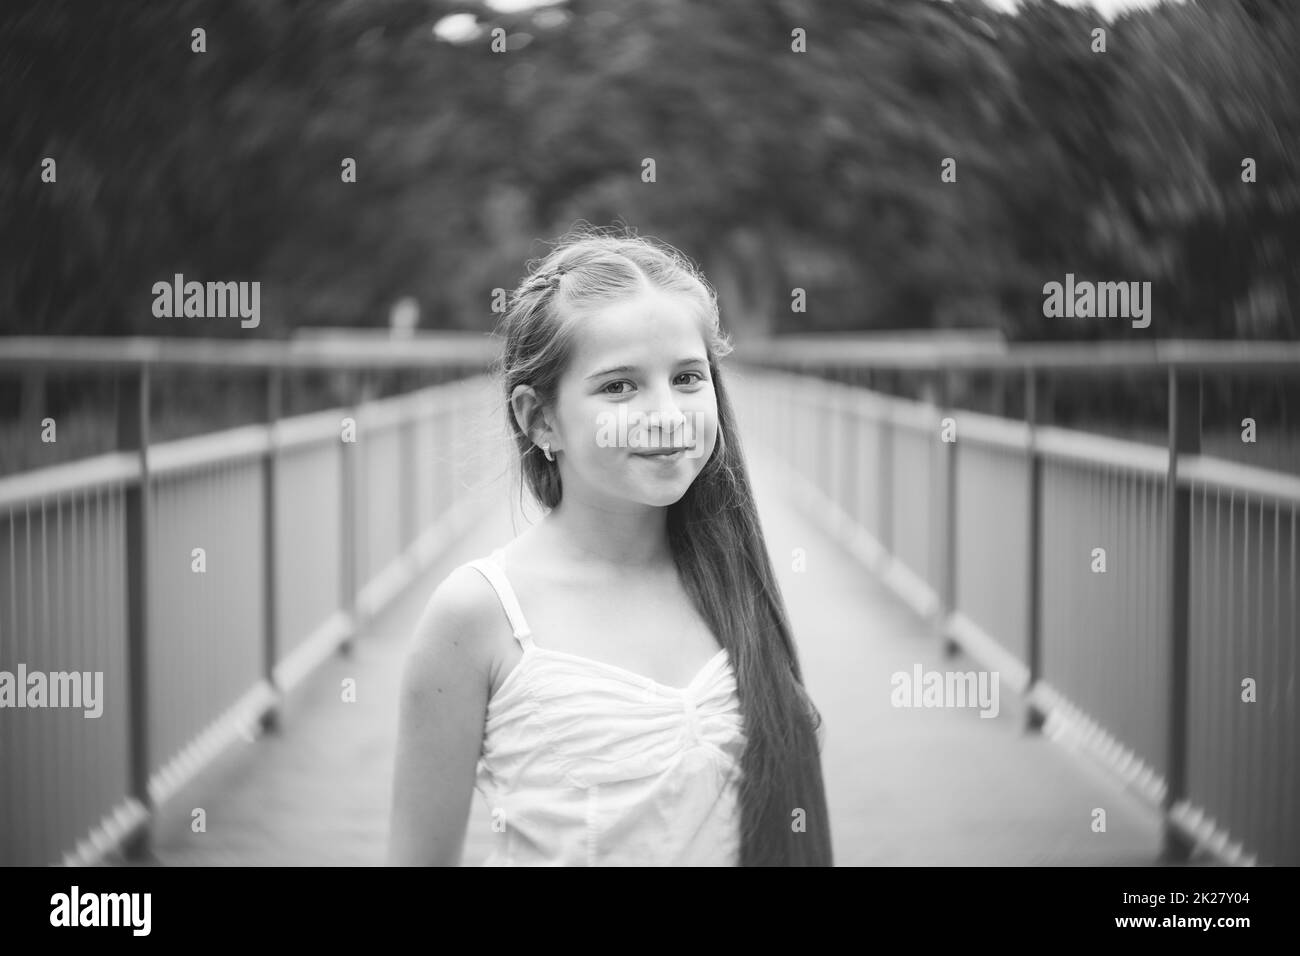 Portrait eines schönen Mädchens mit langen Haaren auf einer Brücke. Schwarz und weiß. Stockfoto